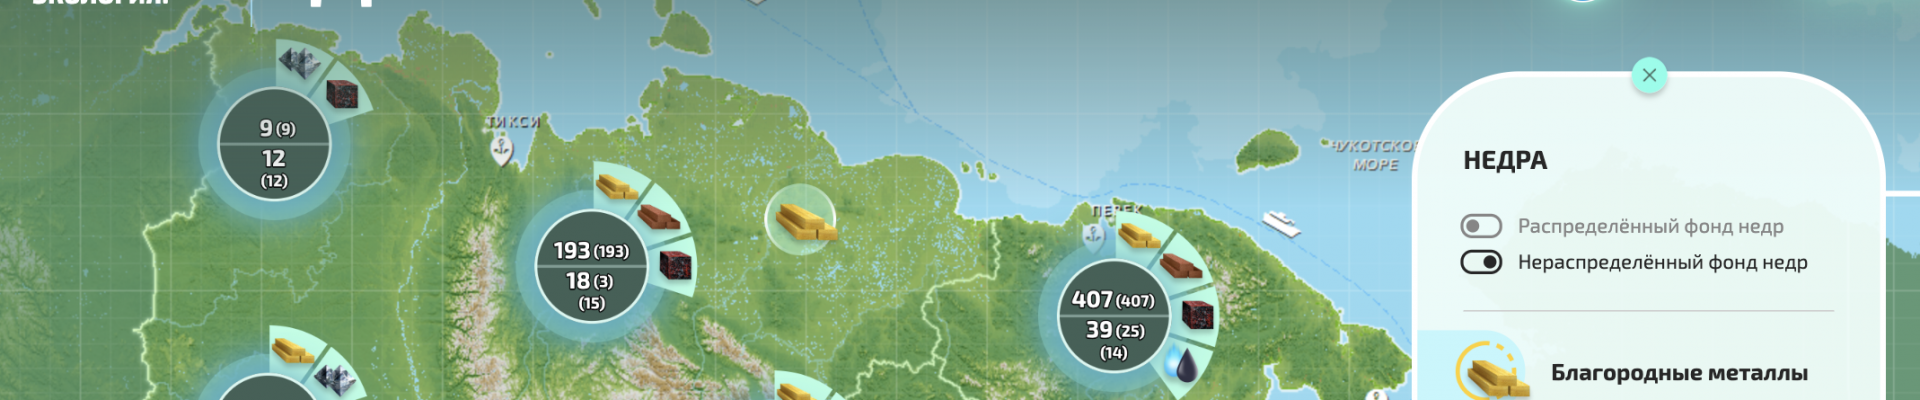 Карта недропользования Дальнего Востока: кадастр месторождений, прогнозные ресурсы, участки недр к лицензированию, лицензии на Портале Минприроды России